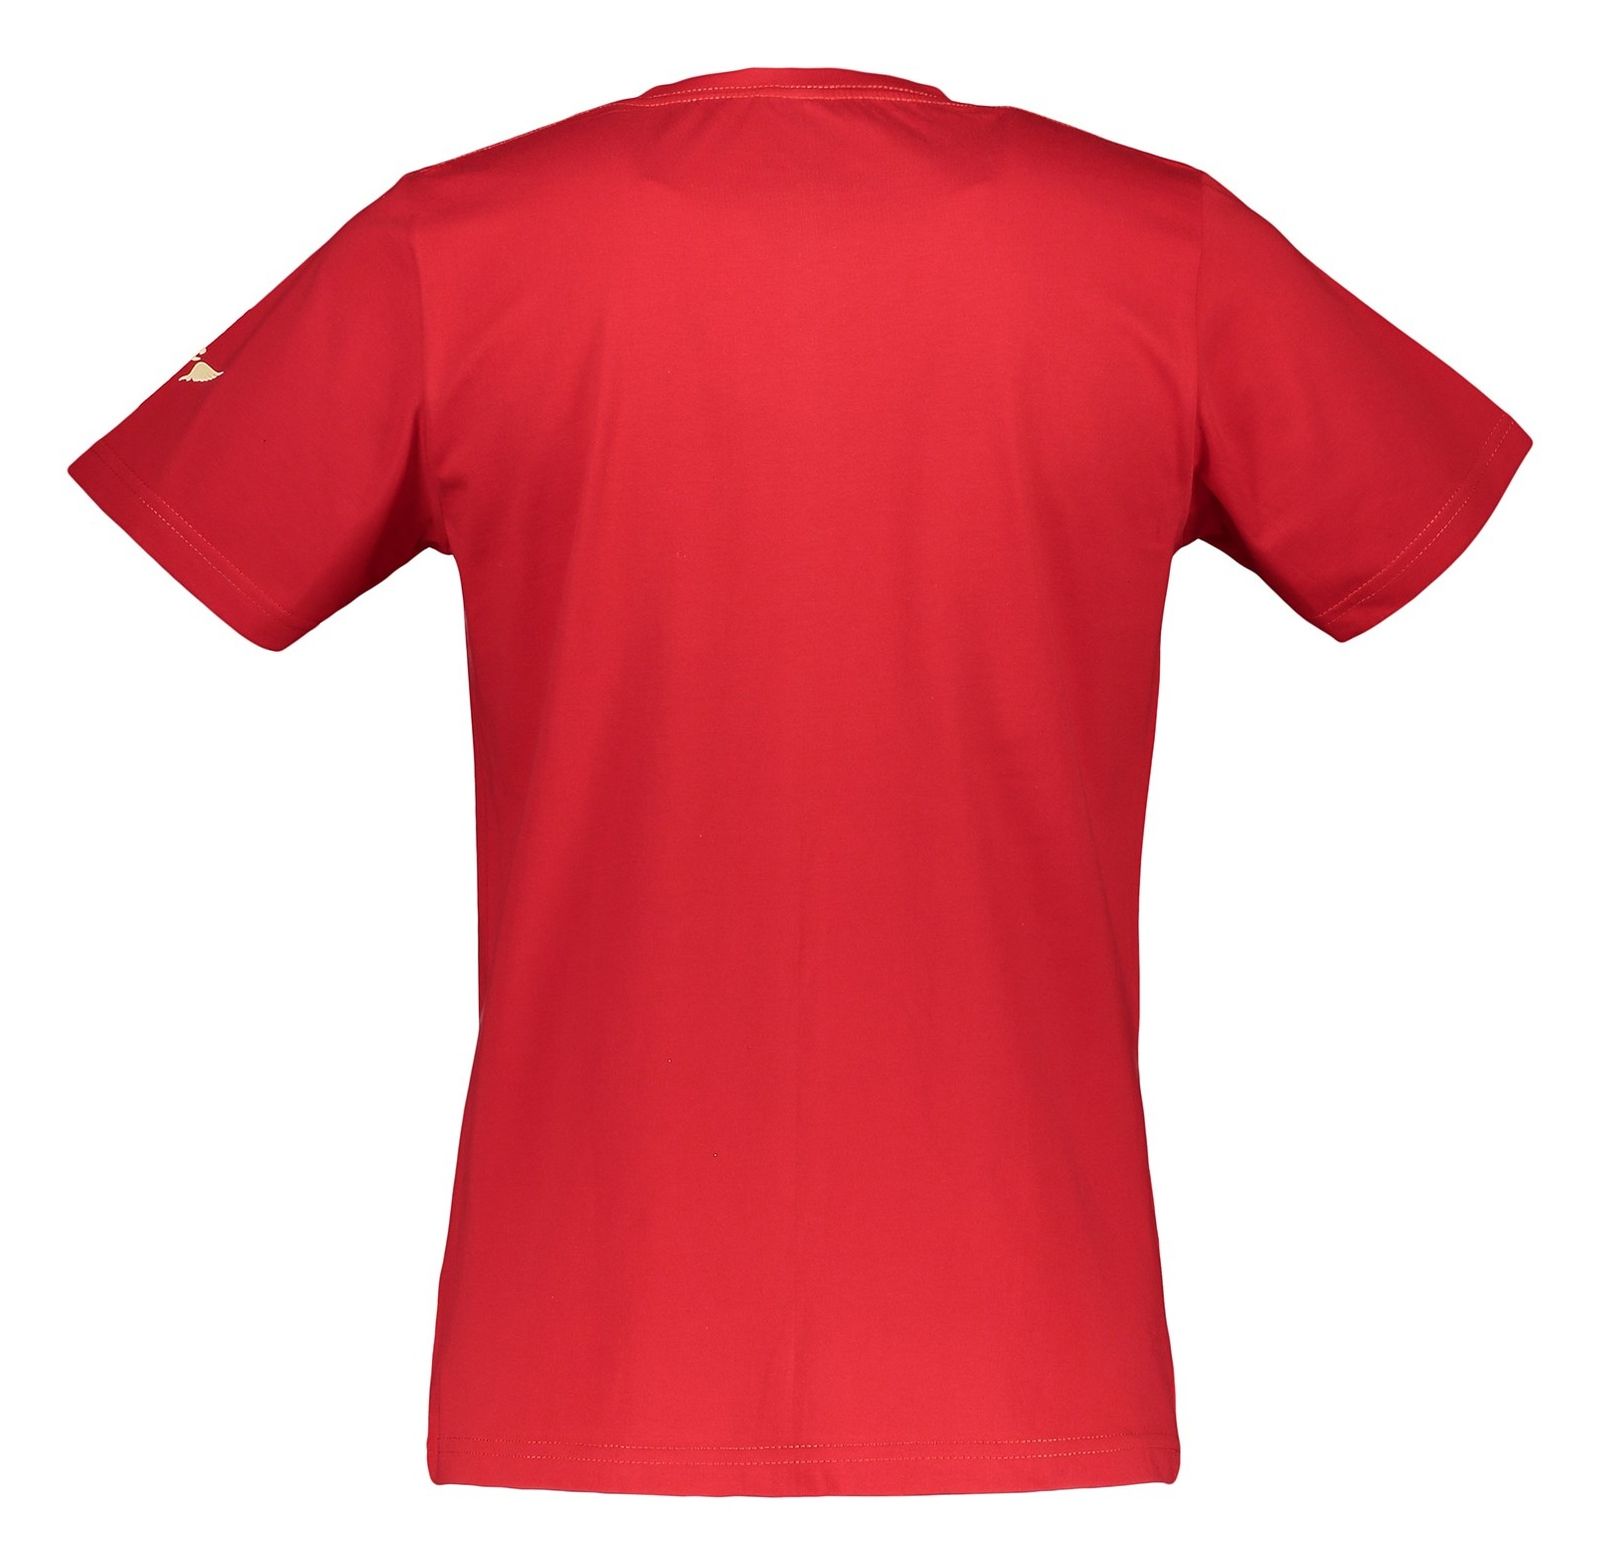 تی شرت آستین کوتاه مردانه - تچر - قرمز - 3